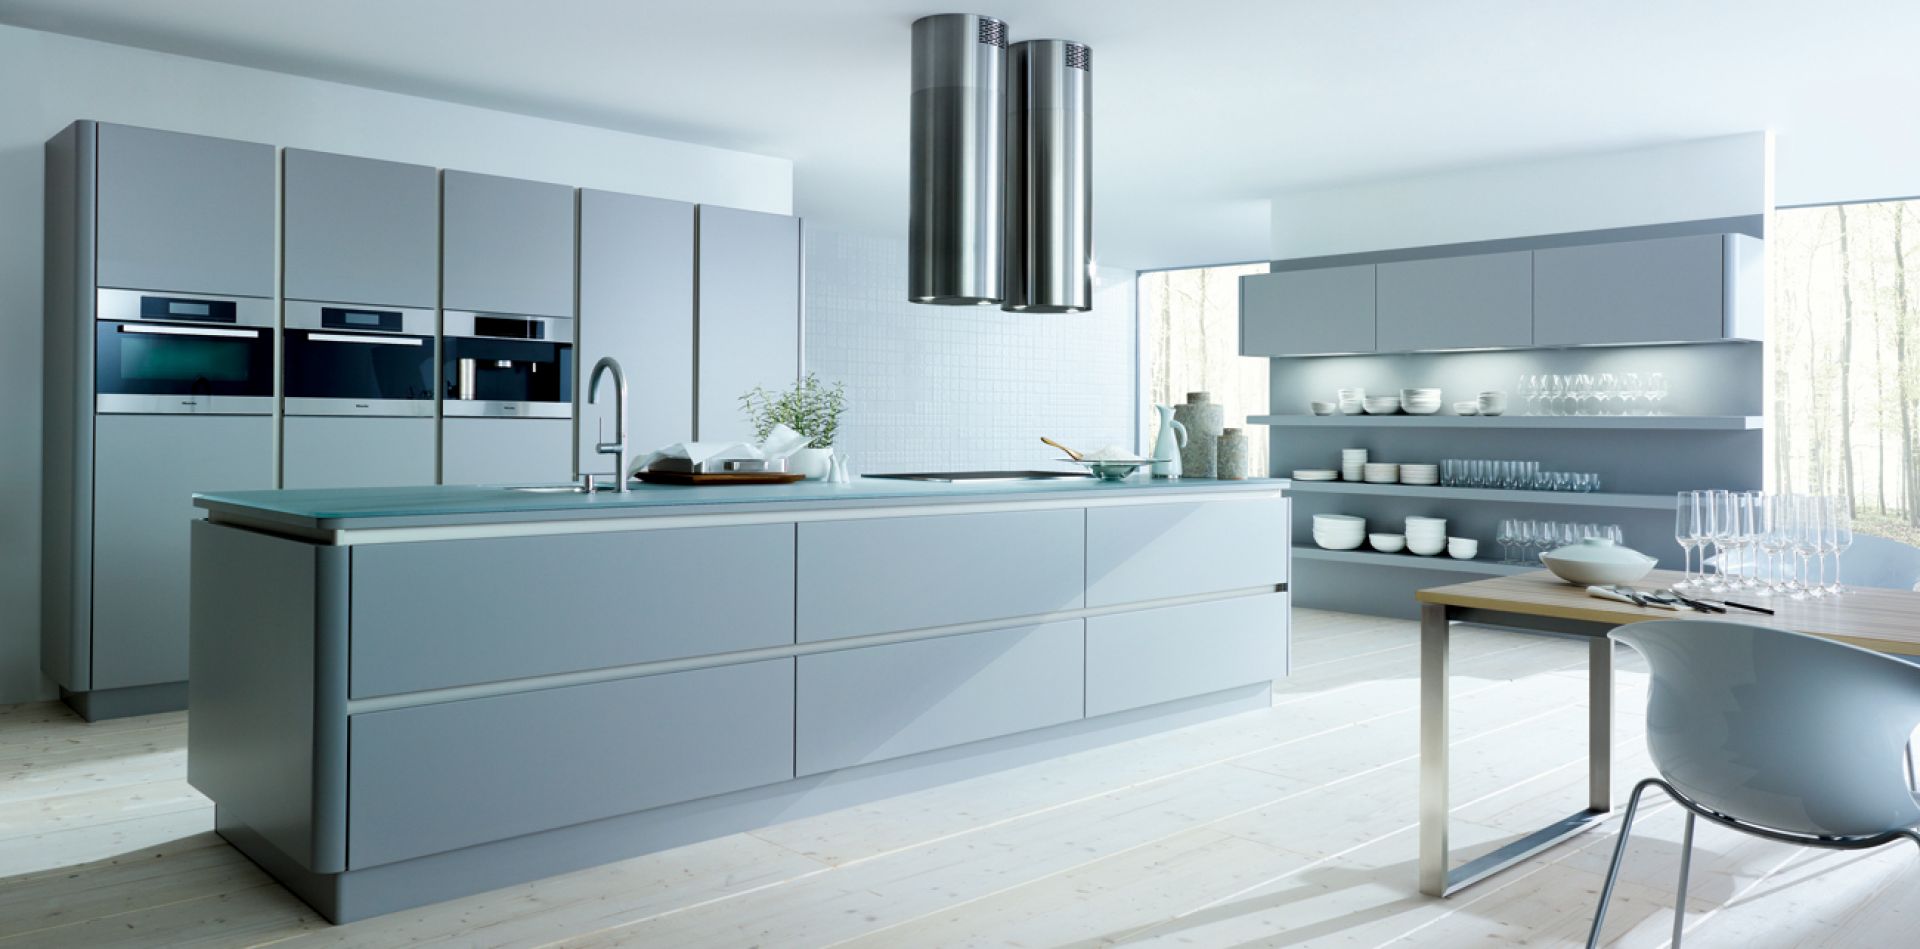 Wyspa stanowi doskonałe uzupełnienie nowoczesnych wnętrz kuchennych, Dzięki niej można stworzyć minimalistyczną aranżację. Fot. Next 125